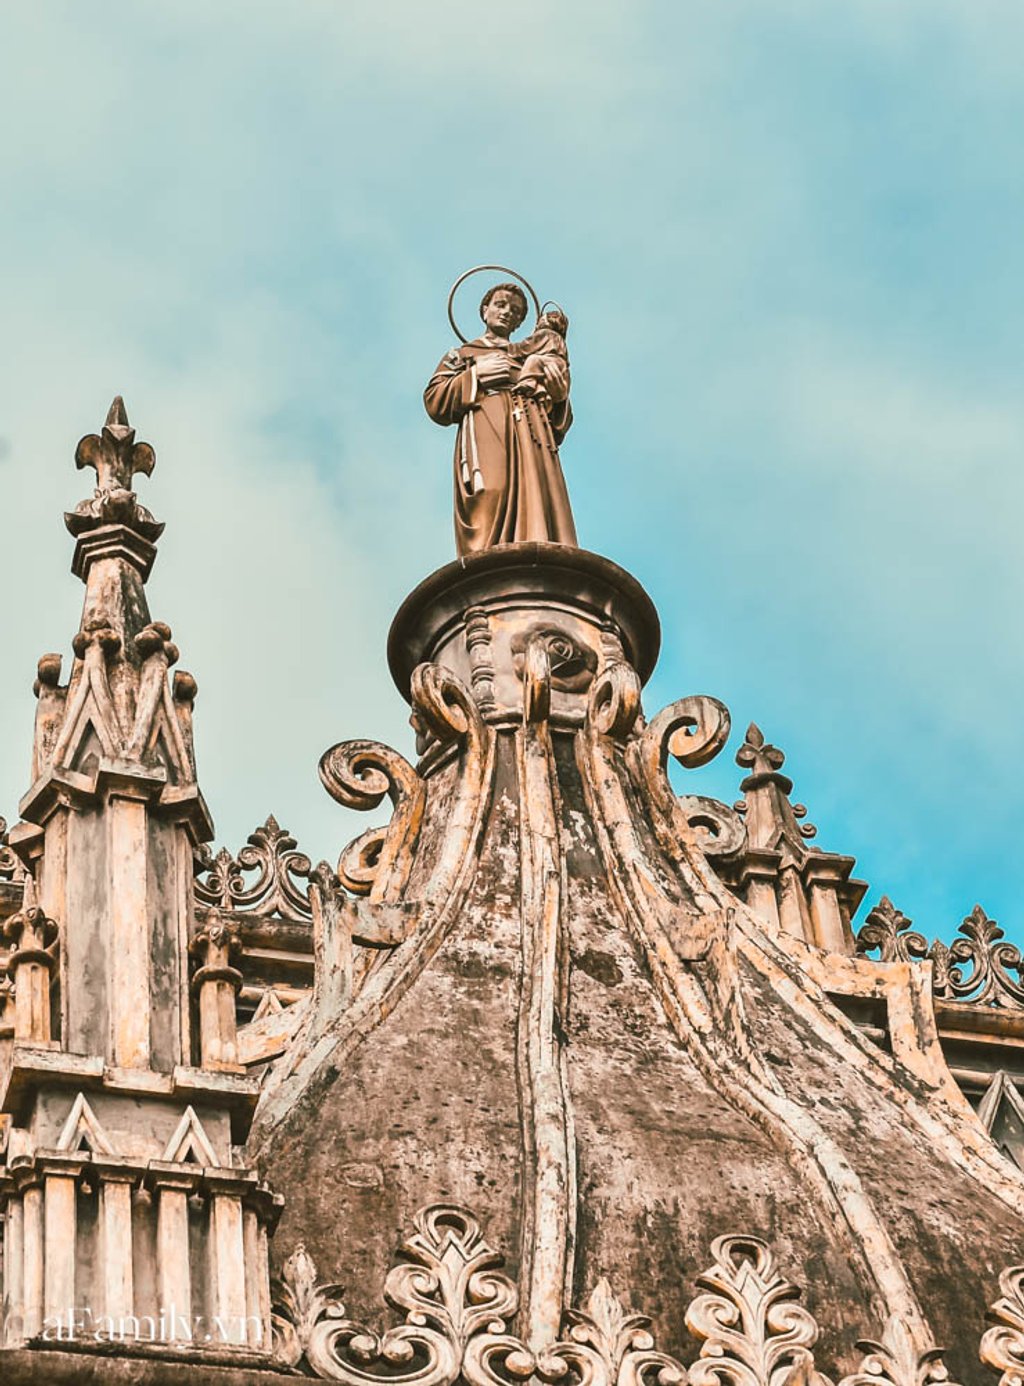 Càng đến gần, những lối kiến trúc cổ, hoa văn cầu kỳ dần hiện ra trước mắt, khiến cho ta hiểu vì sao nhà thờ Hưng Nghĩa được nằm trong những nhà thờ đẹp nhất của Nam Định.